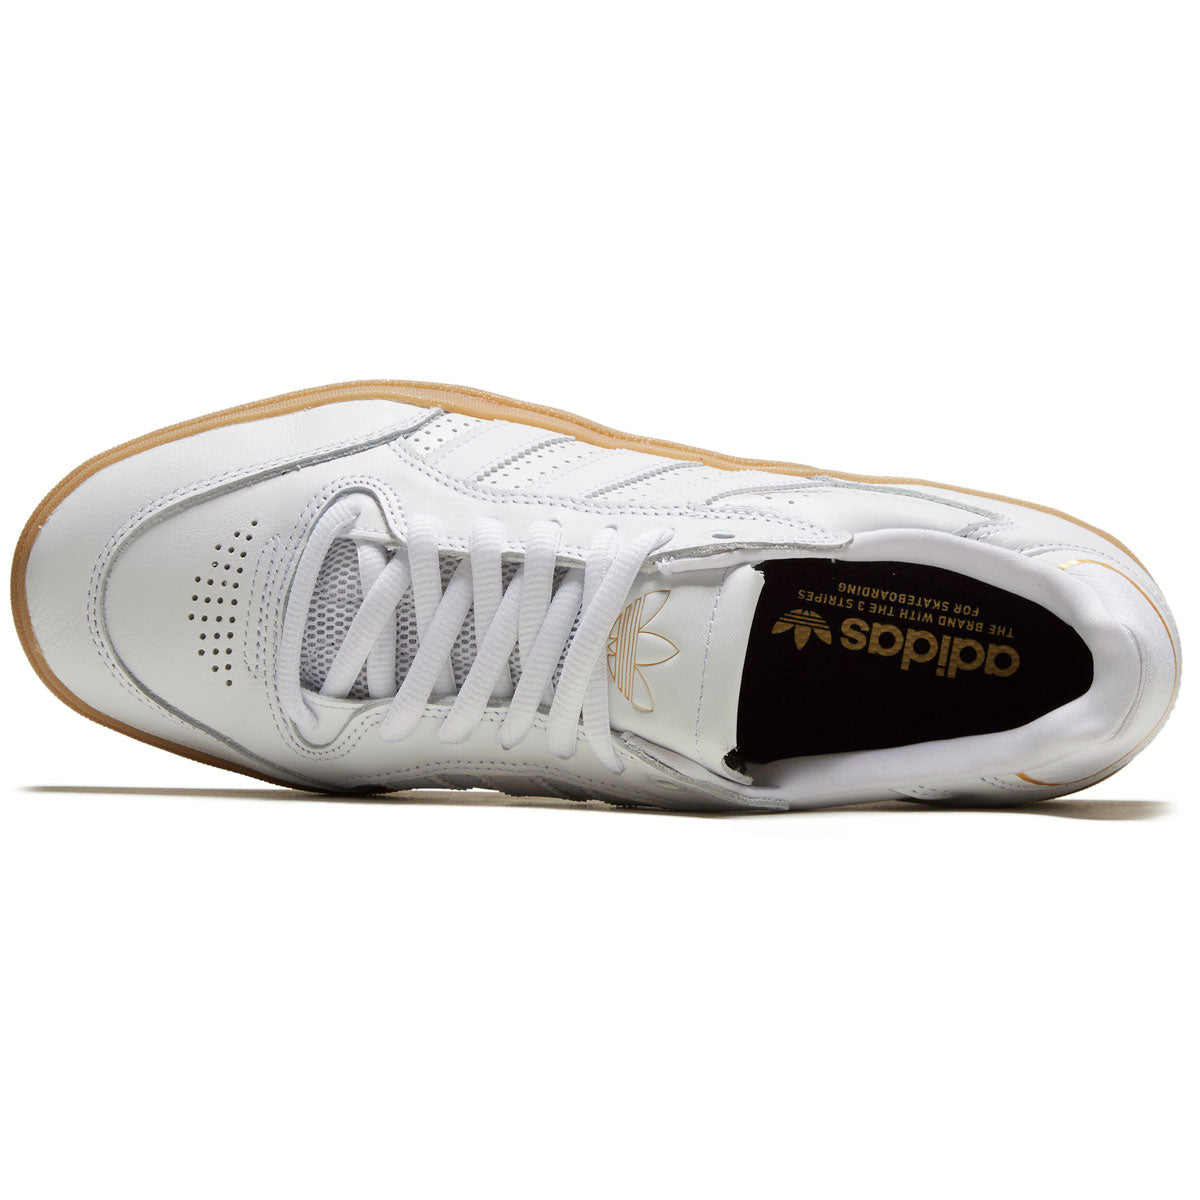 Adidas Tyshawn Low Shoes - White/White/Gum image 3